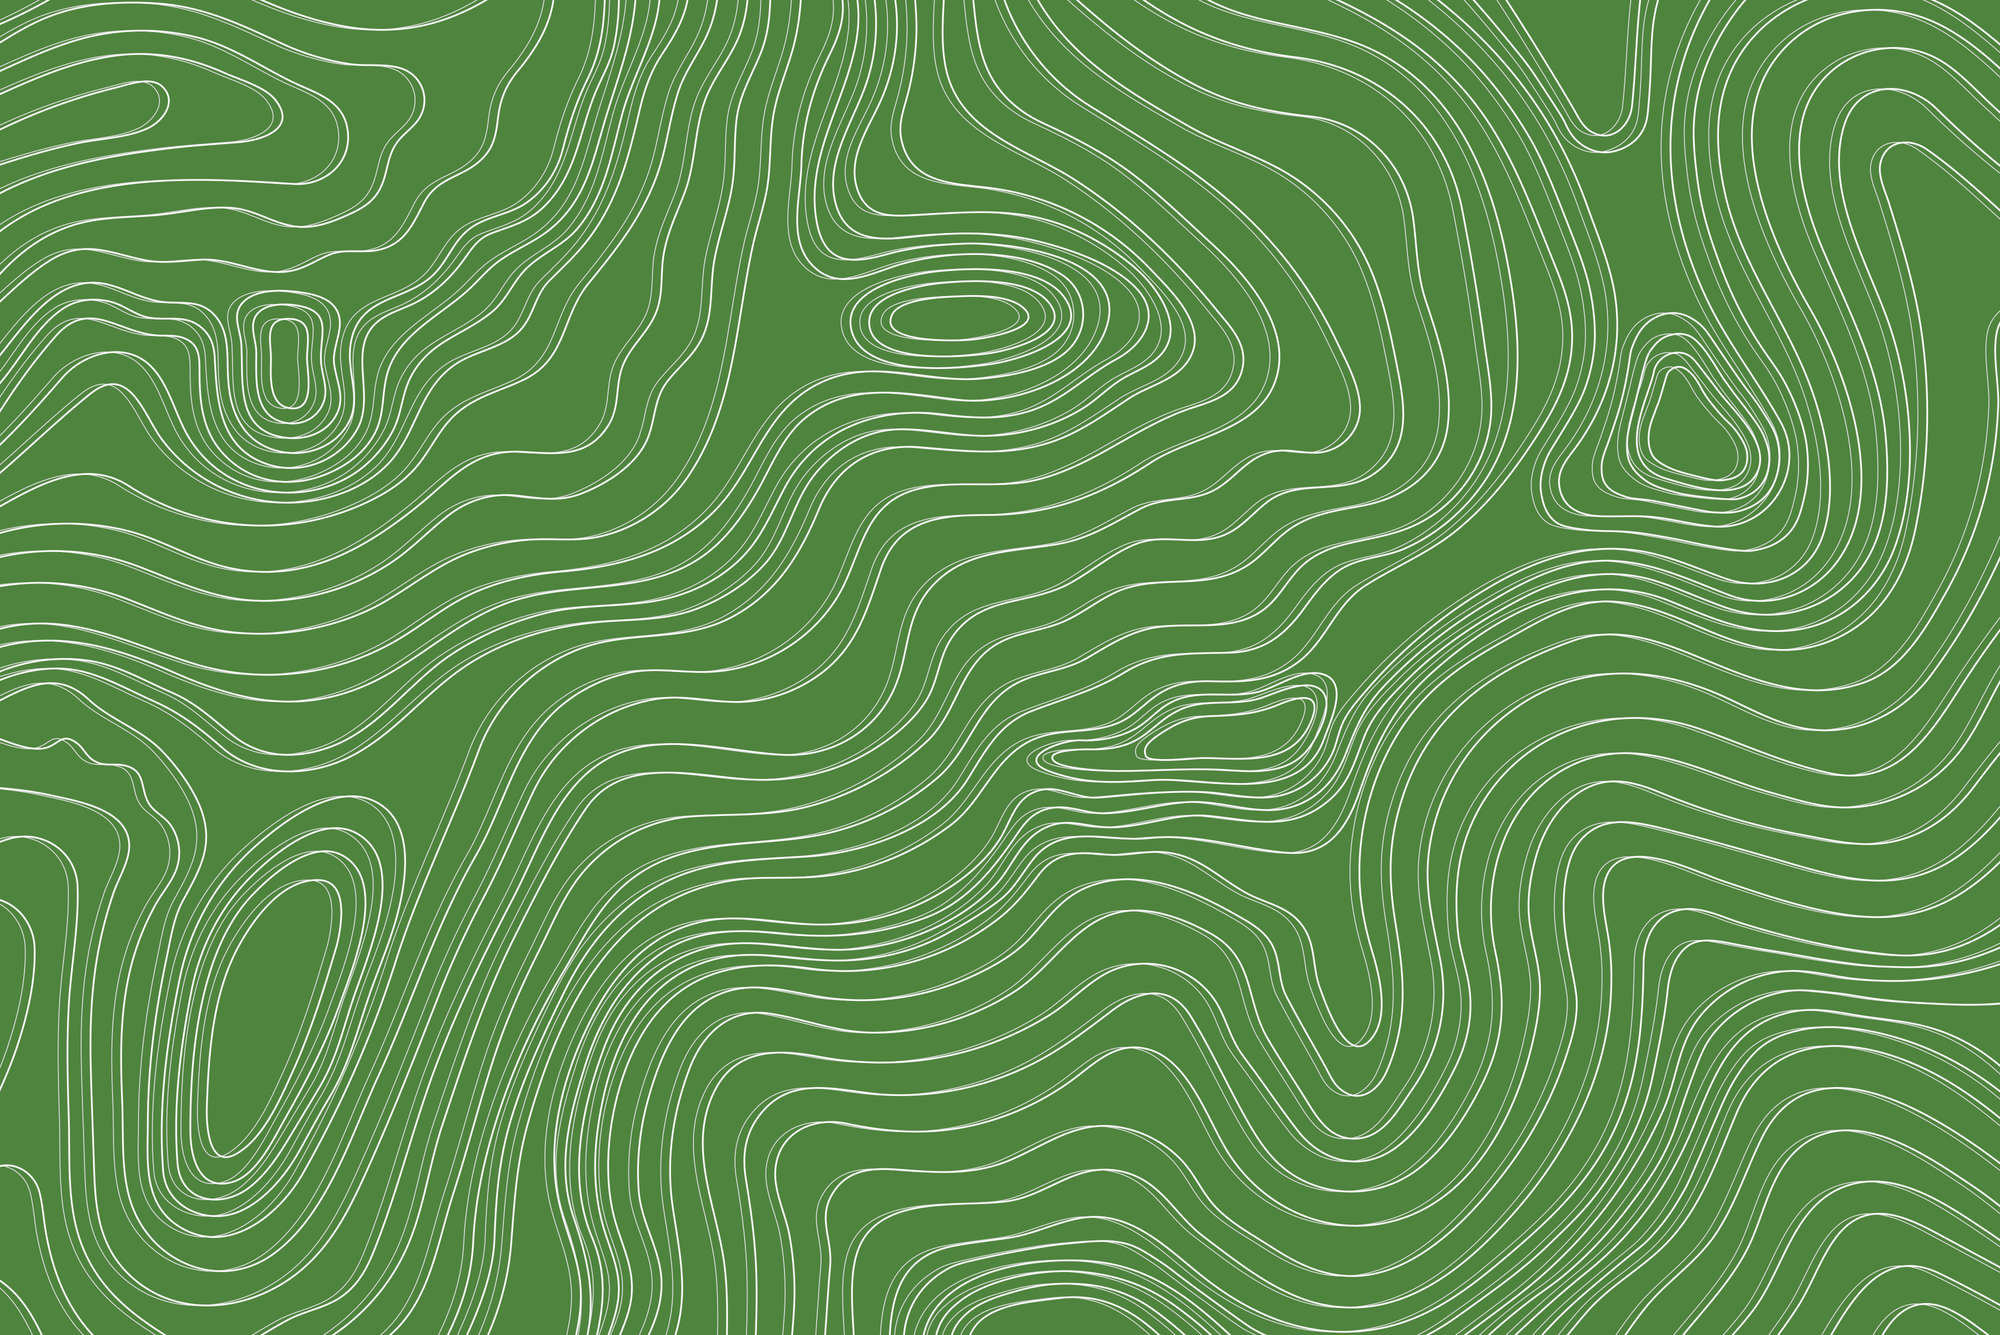             Papier peint design vagues et cercles motif vert sur intissé lisse mat
        